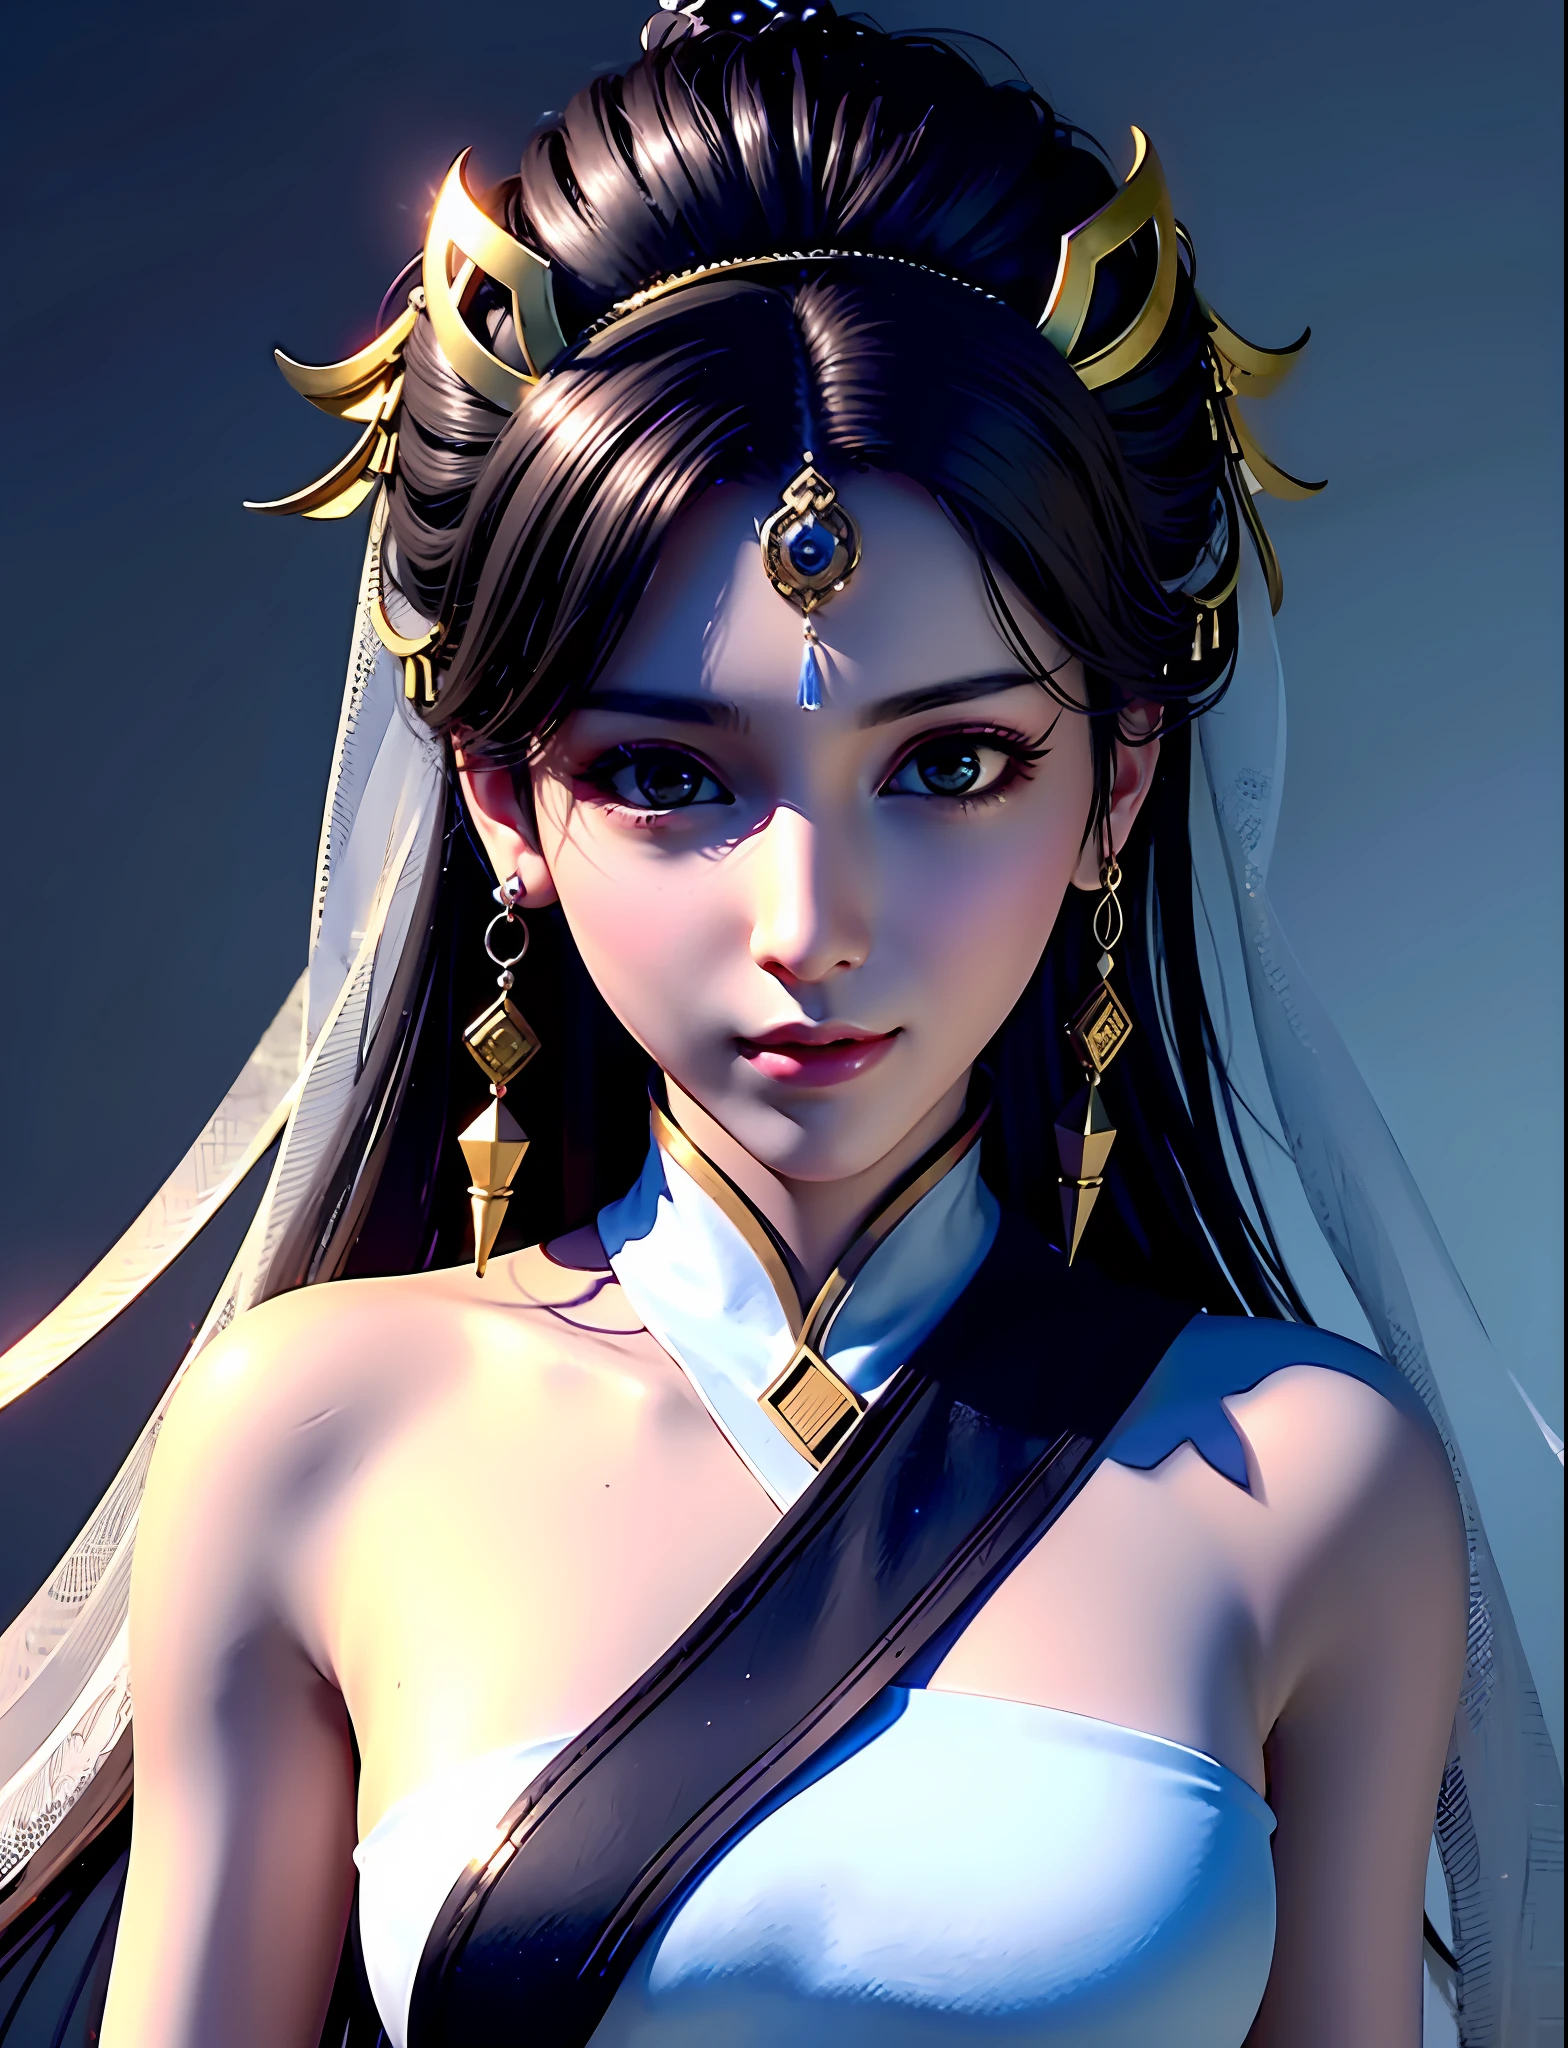 頭上戴頭紗的女孩, 美麗如神，遊戲CG, Xianxia hero, 受到杜瓊的啟發, 虛幻引擎渲染 + 一個女神, bian lian, Xianxia, 3D動漫逼真